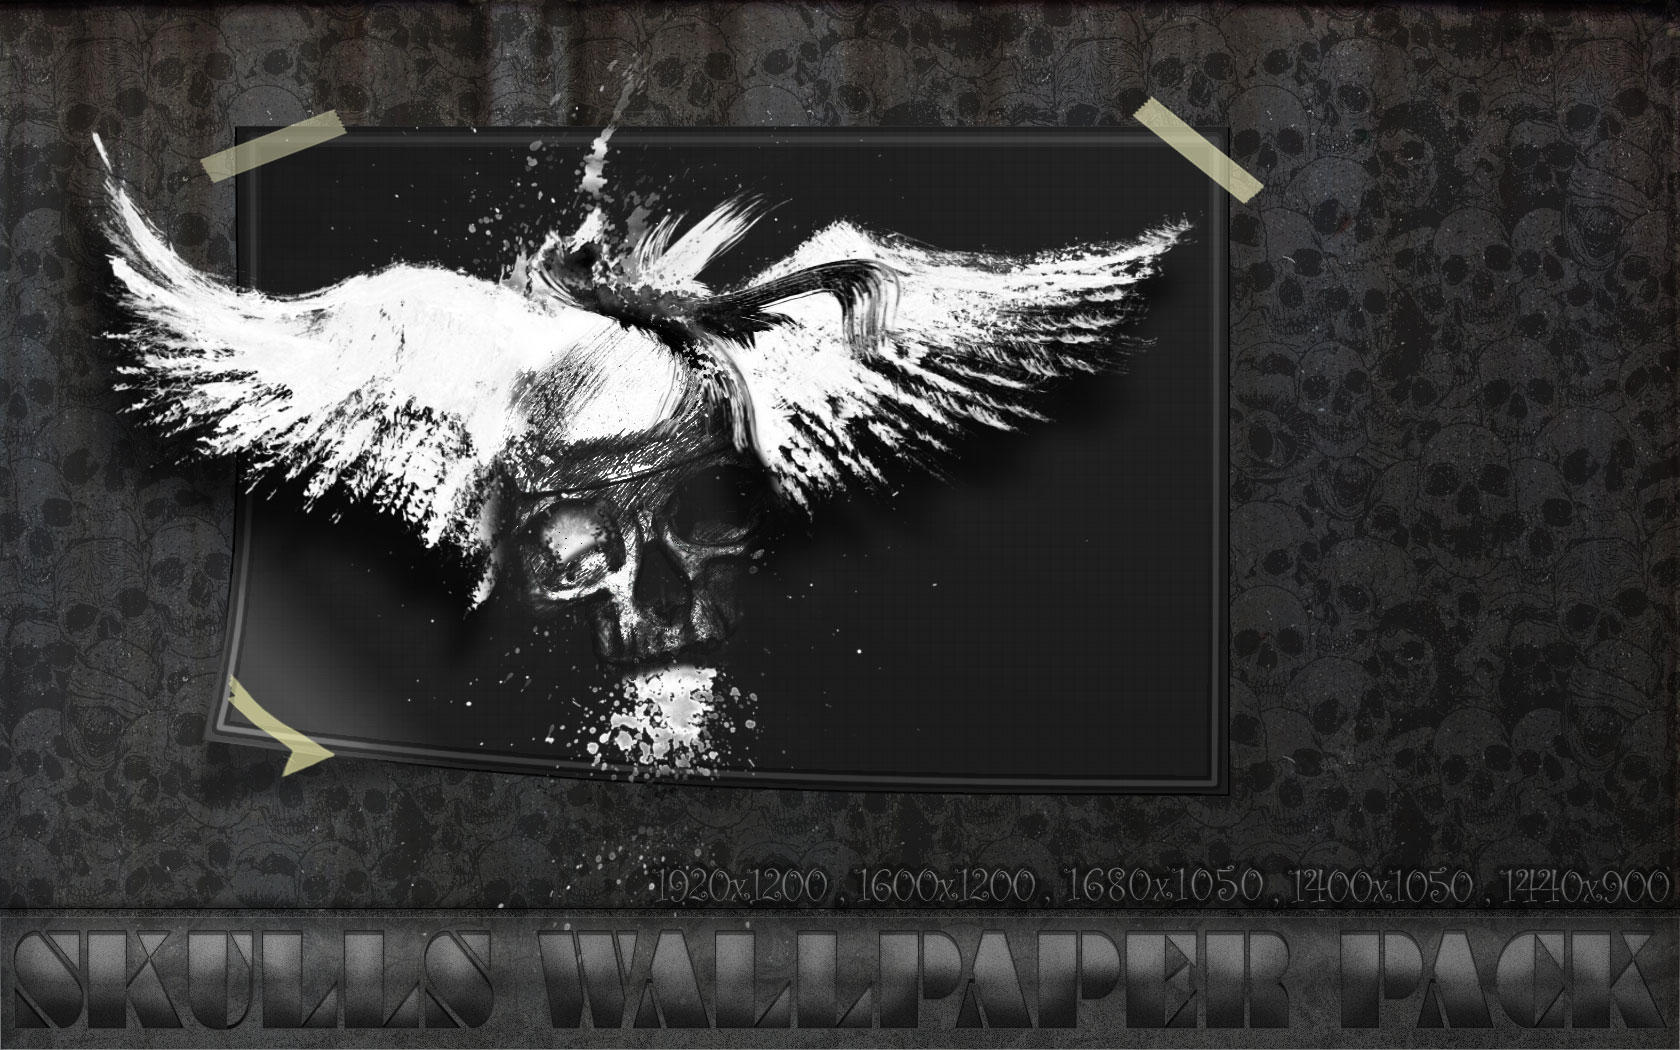 Skulls Wallpaper Pack by ~Precapice on deviantART